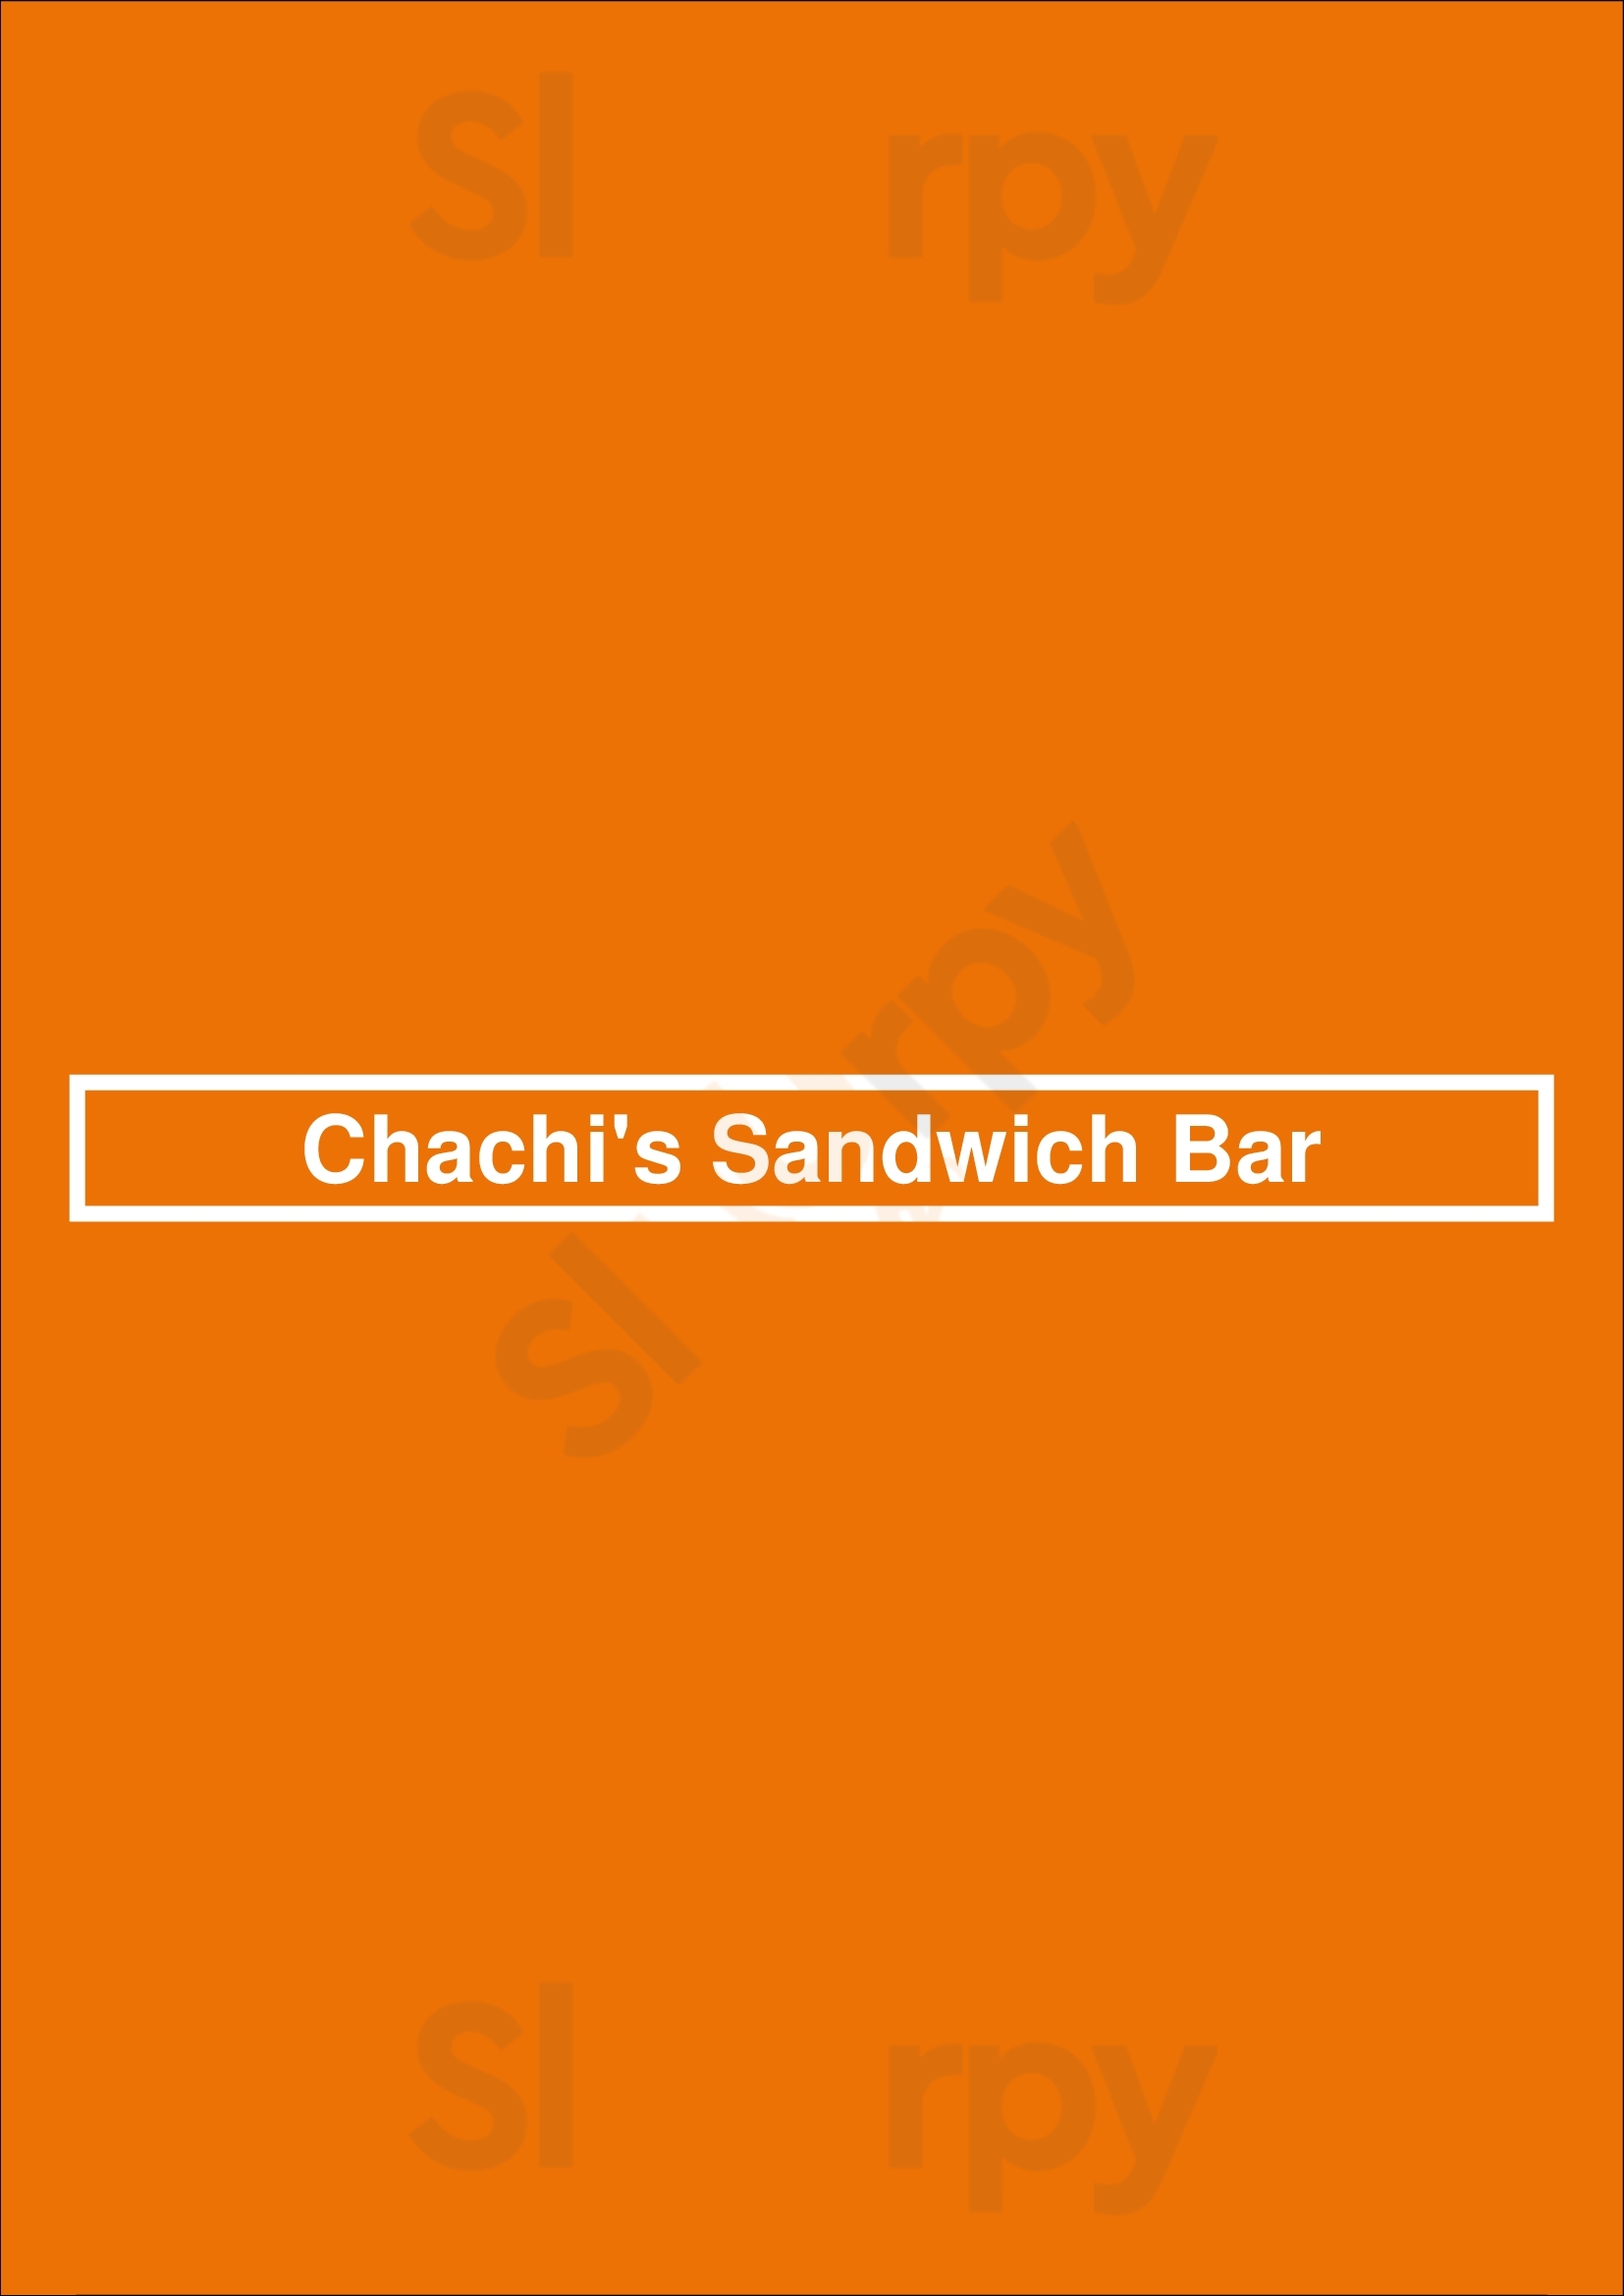 Chachi's Sandwich Bar Calgary Menu - 1